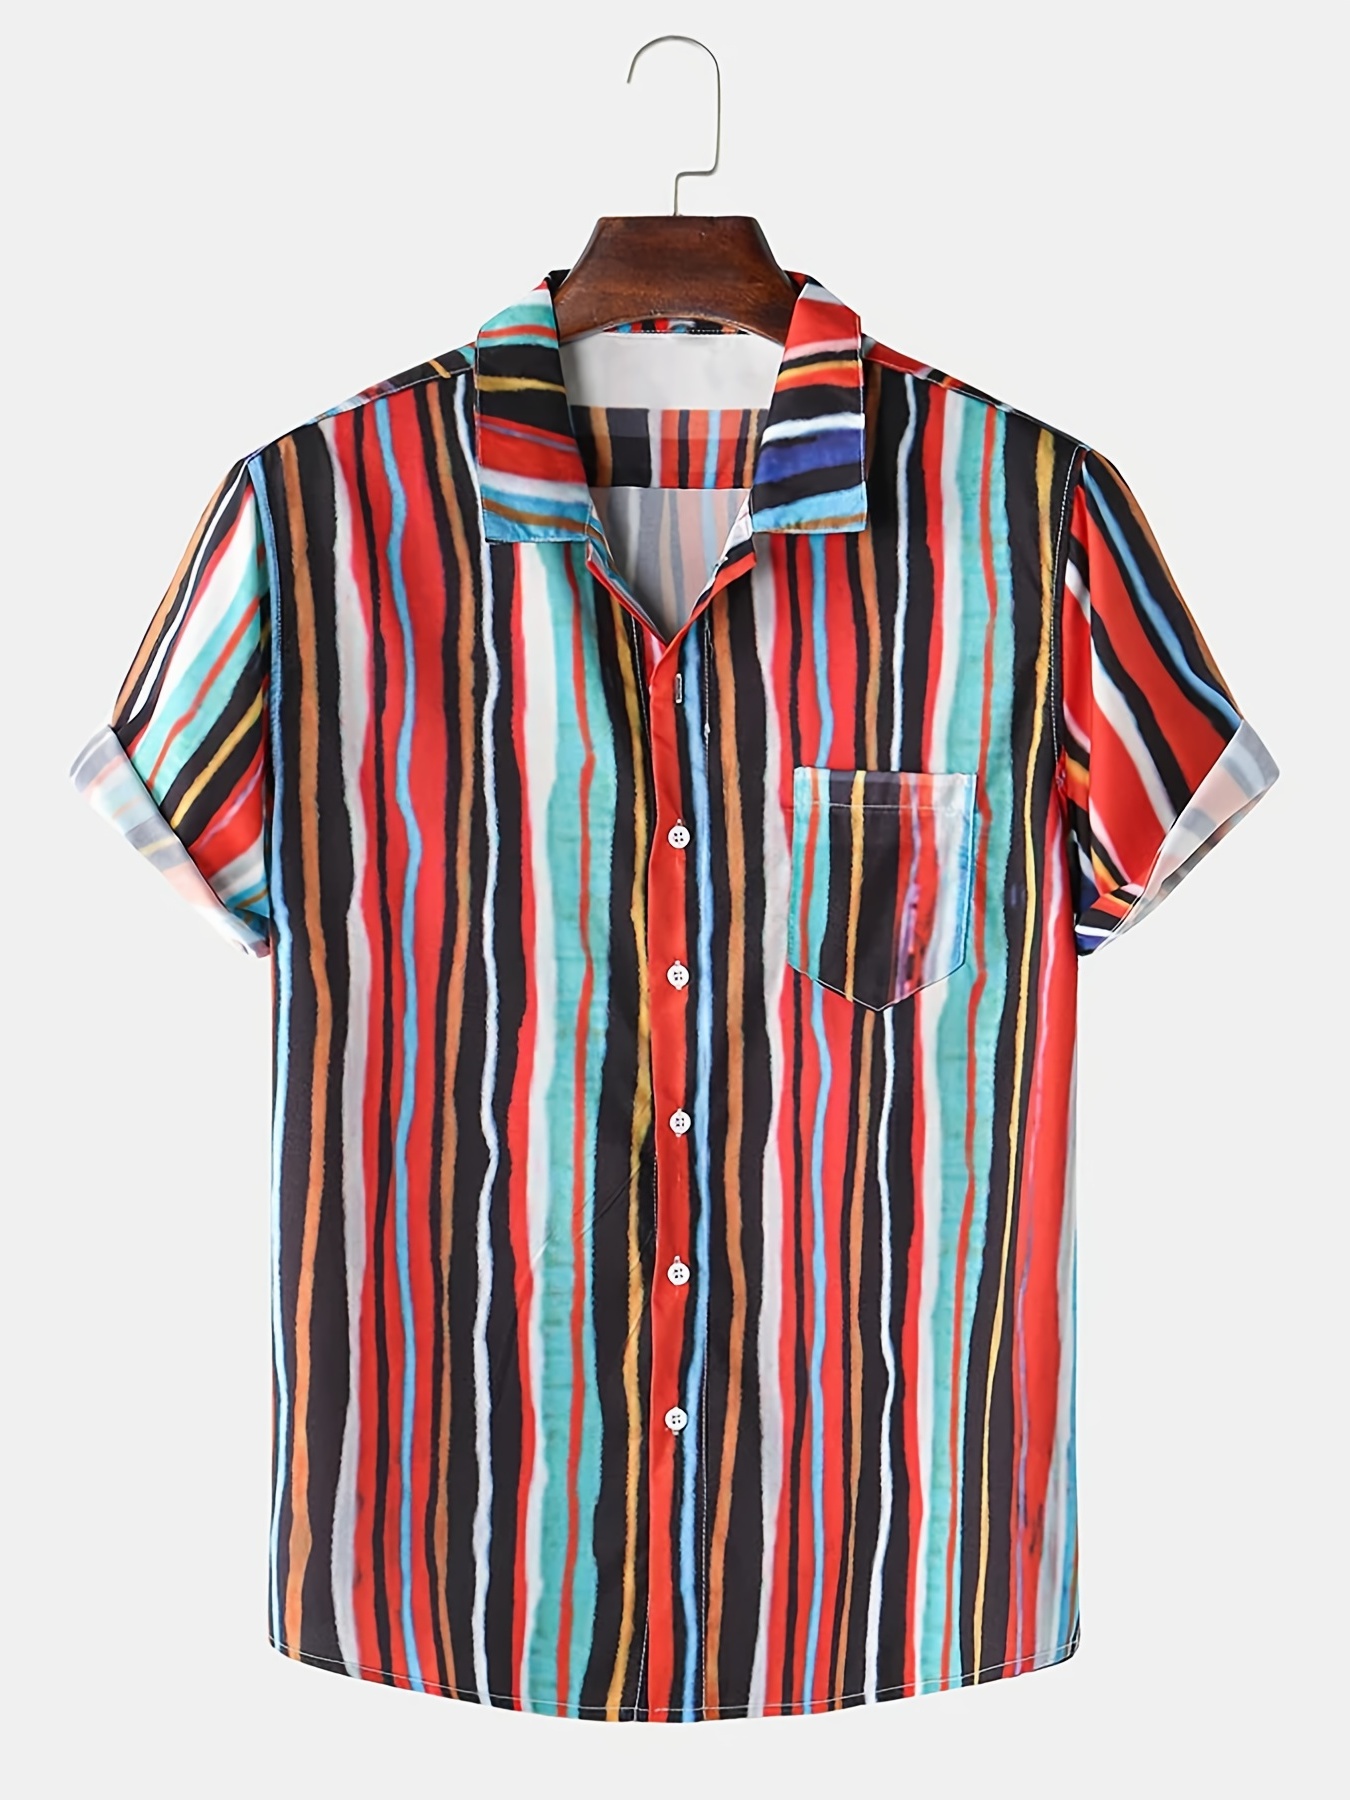 Temu Striped Print Lapel Neck Short Sleeve Shirt, Men's Cotton Blend Casual Summer Hawaiian Shirt Button Up Open Front Tops Beach Dress Shirts,Casual